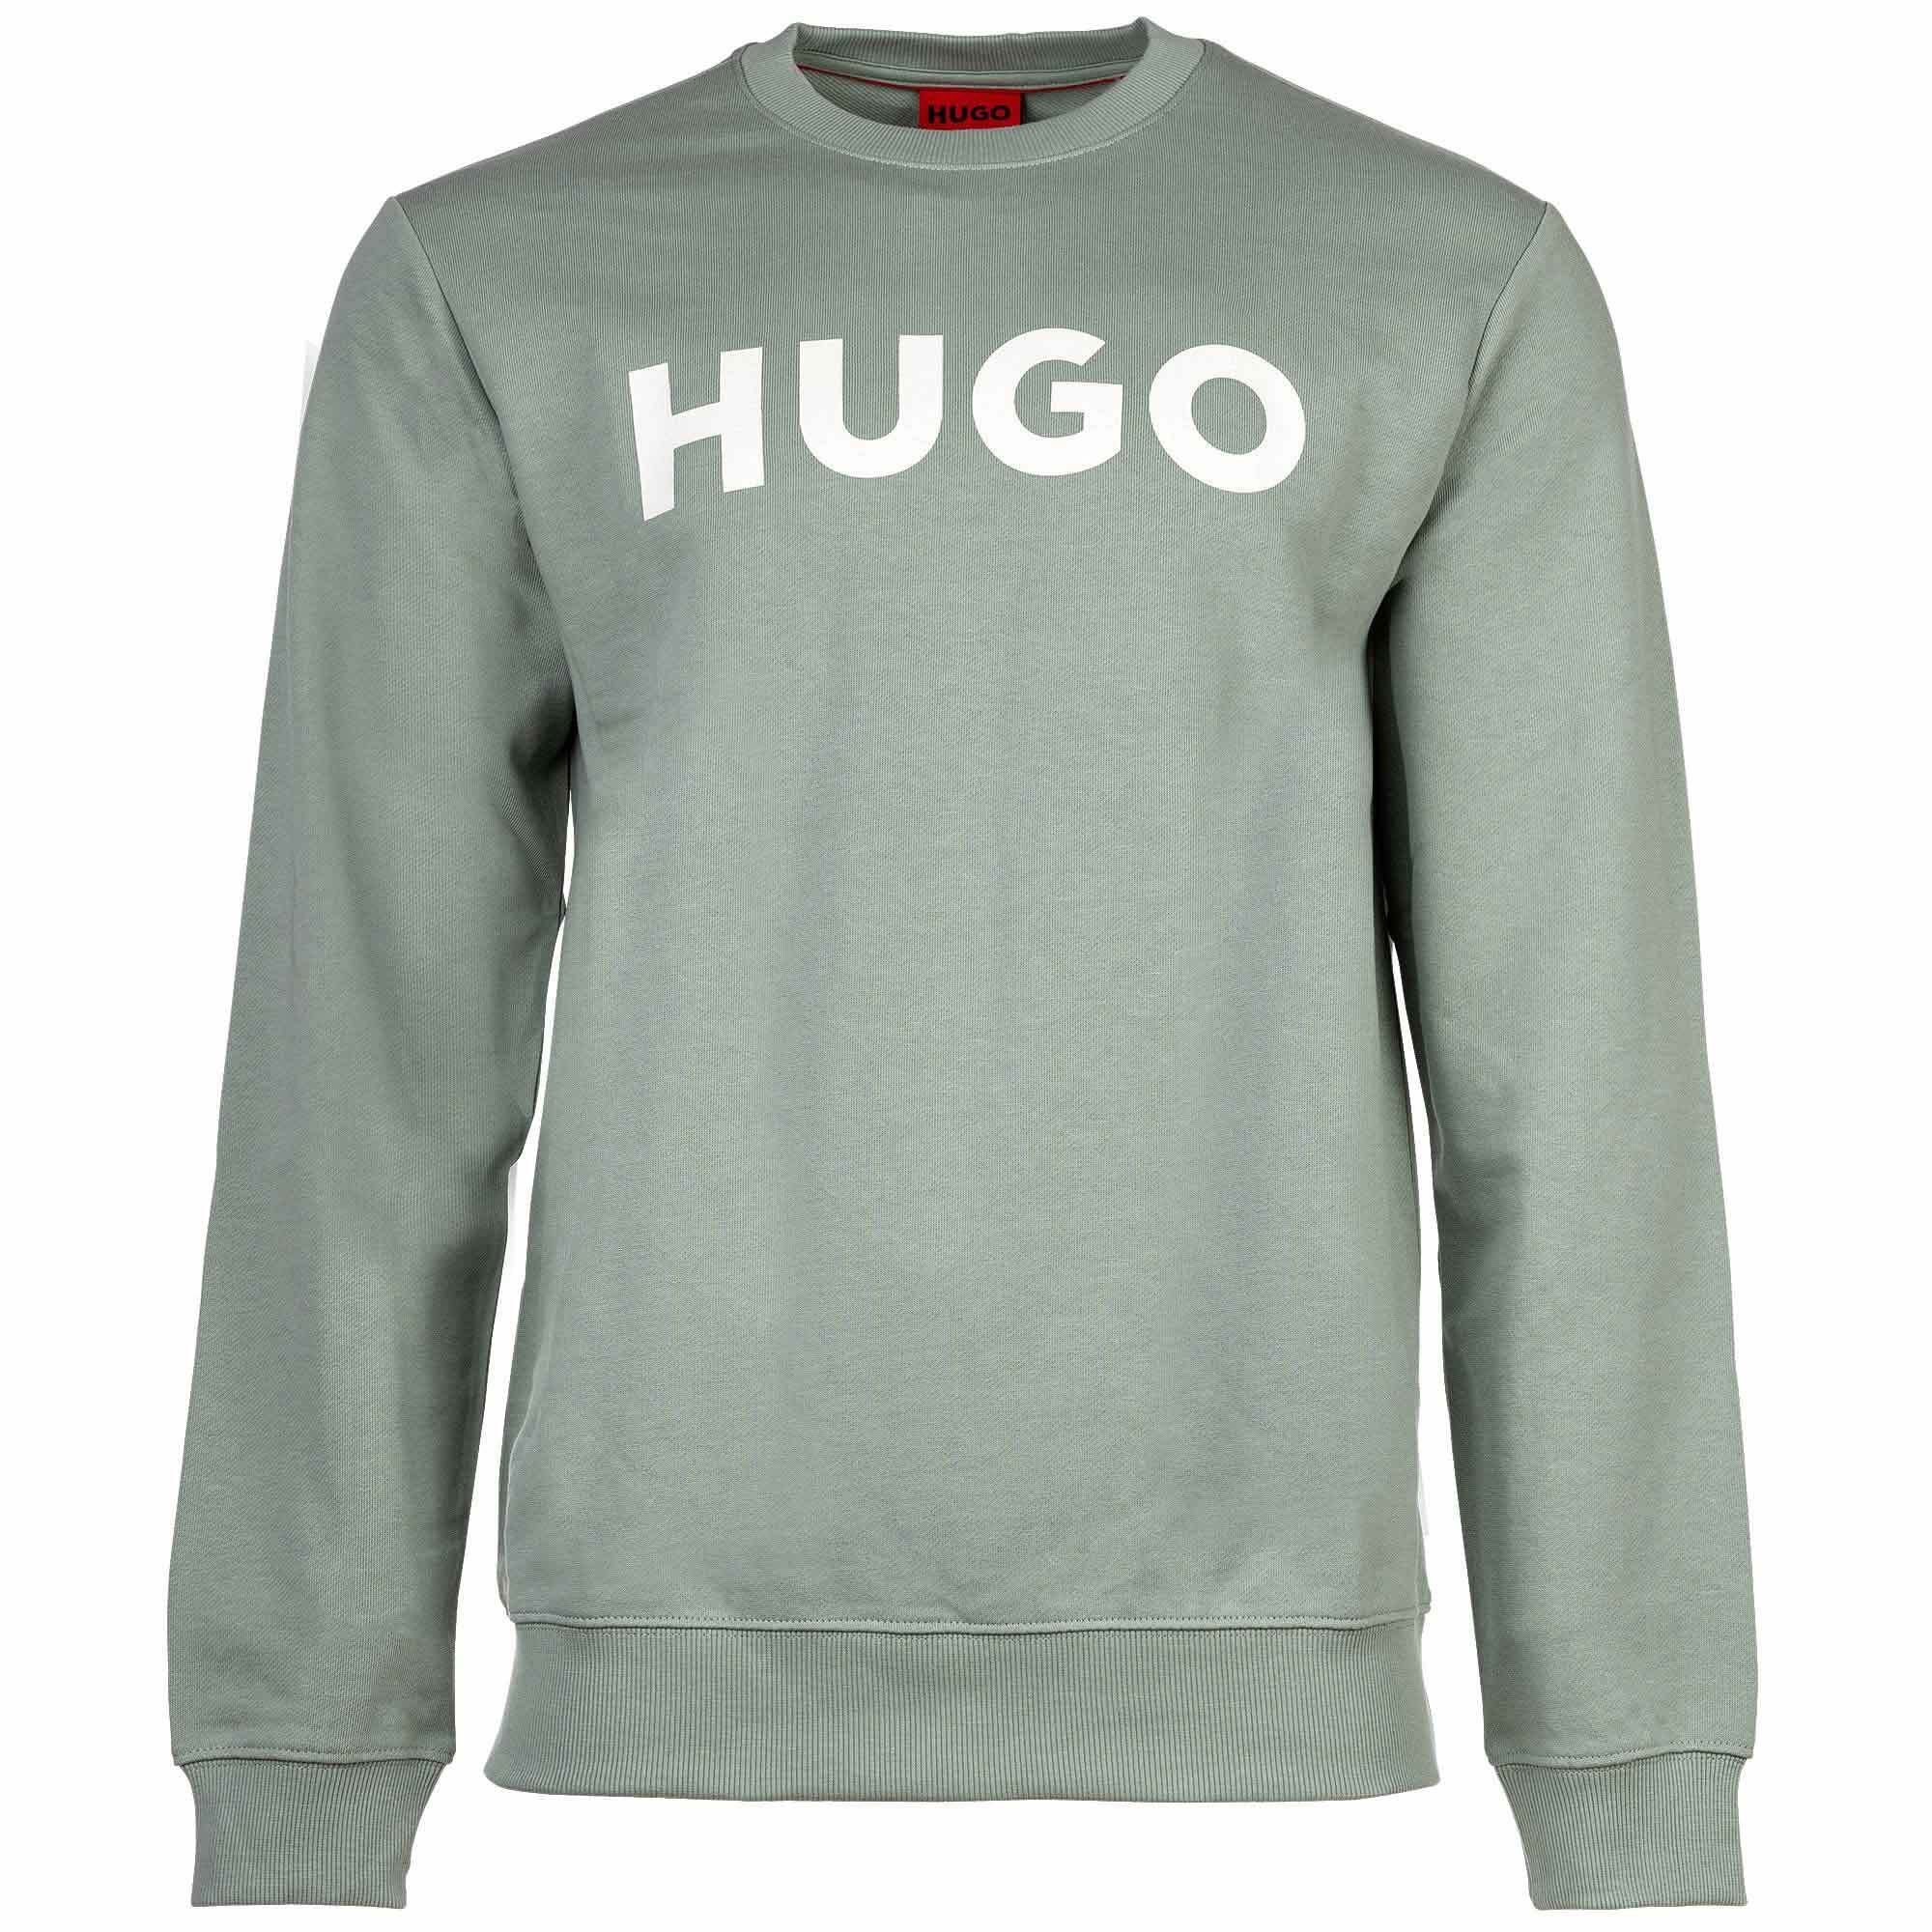 French - Grün Rundhals, DEM, HUGO Sweater Herren Sweatshirt, Sweatshirt